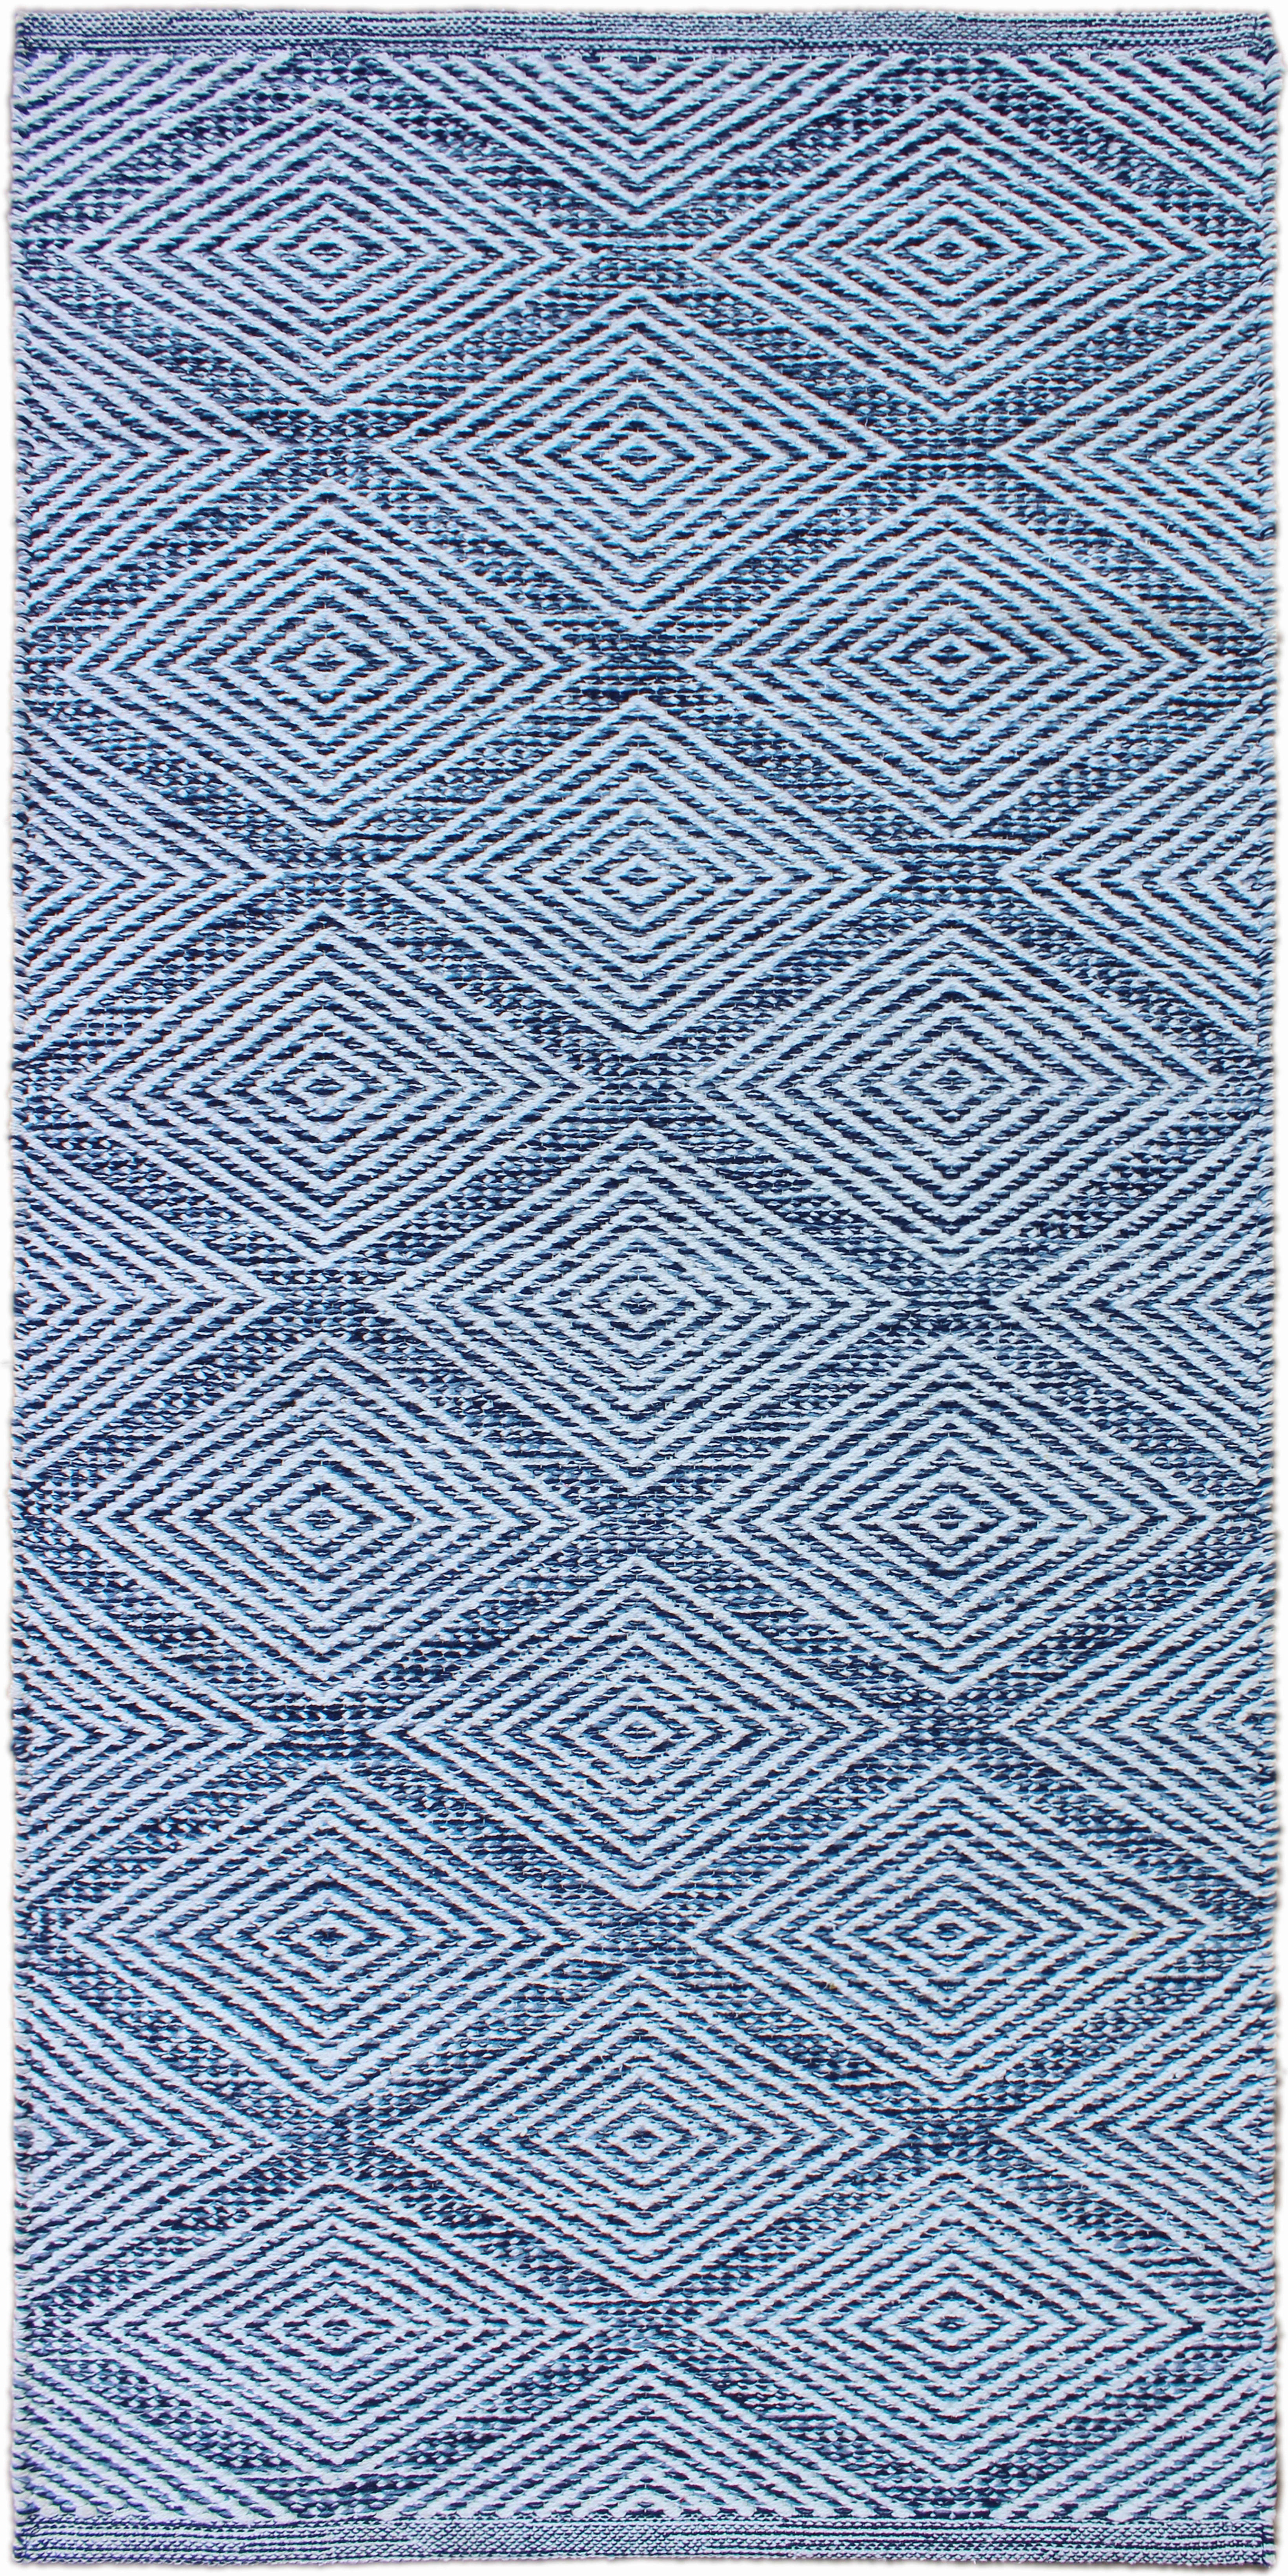 RONGYSZŐNYEG  Diamant Denim  - Kék, Design, Textil (60/120cm) - Linea Natura